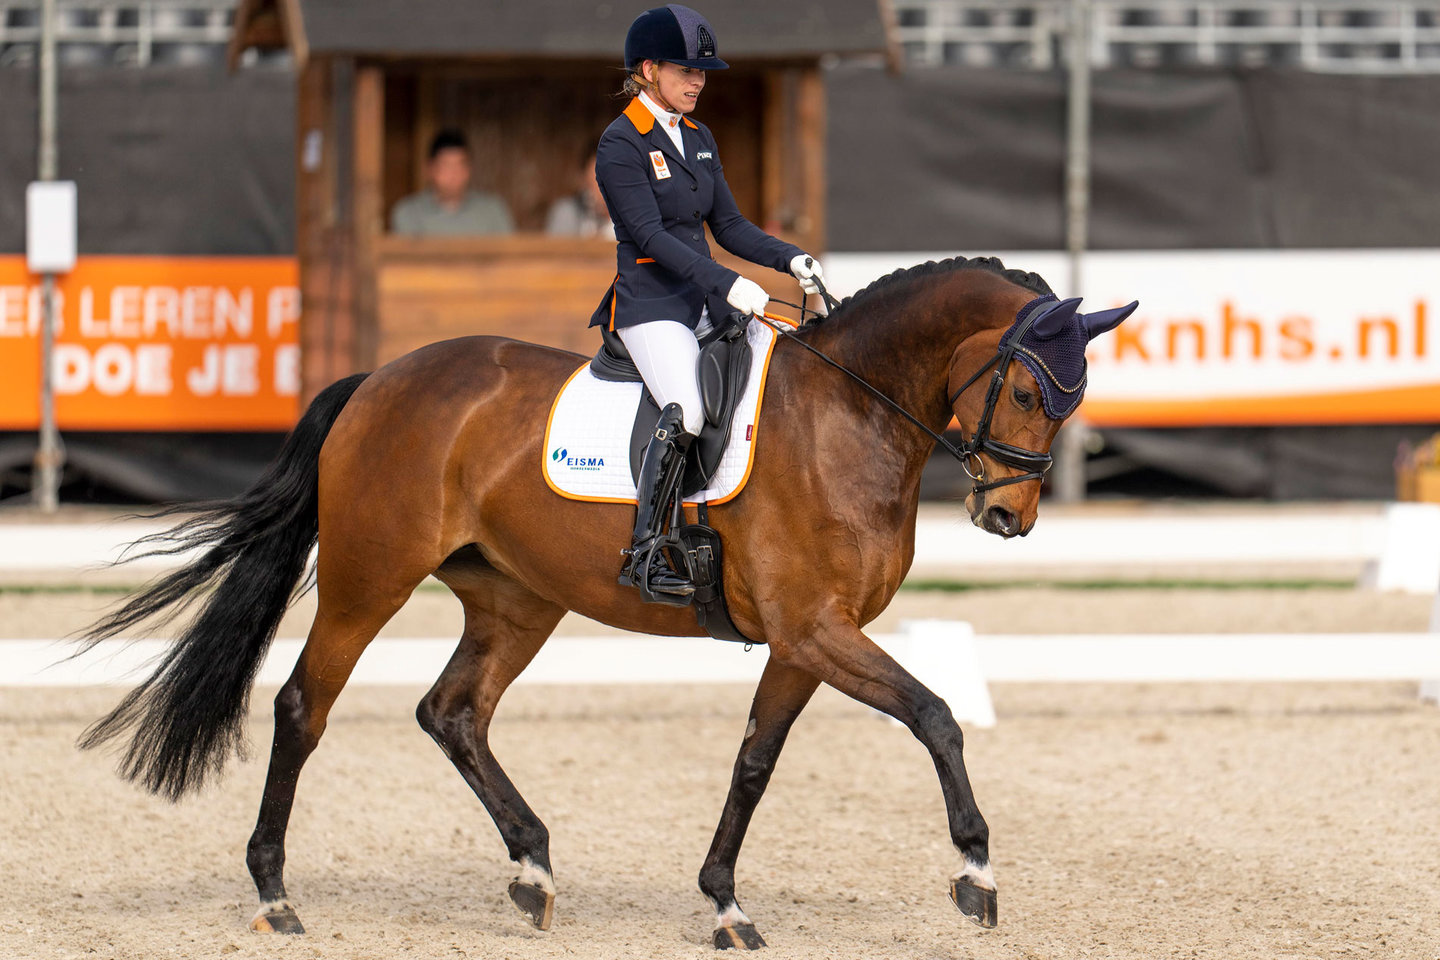 Paradressuurruiter Rixt van der Horst focust zich tijdens de dressuurproef op haar paard